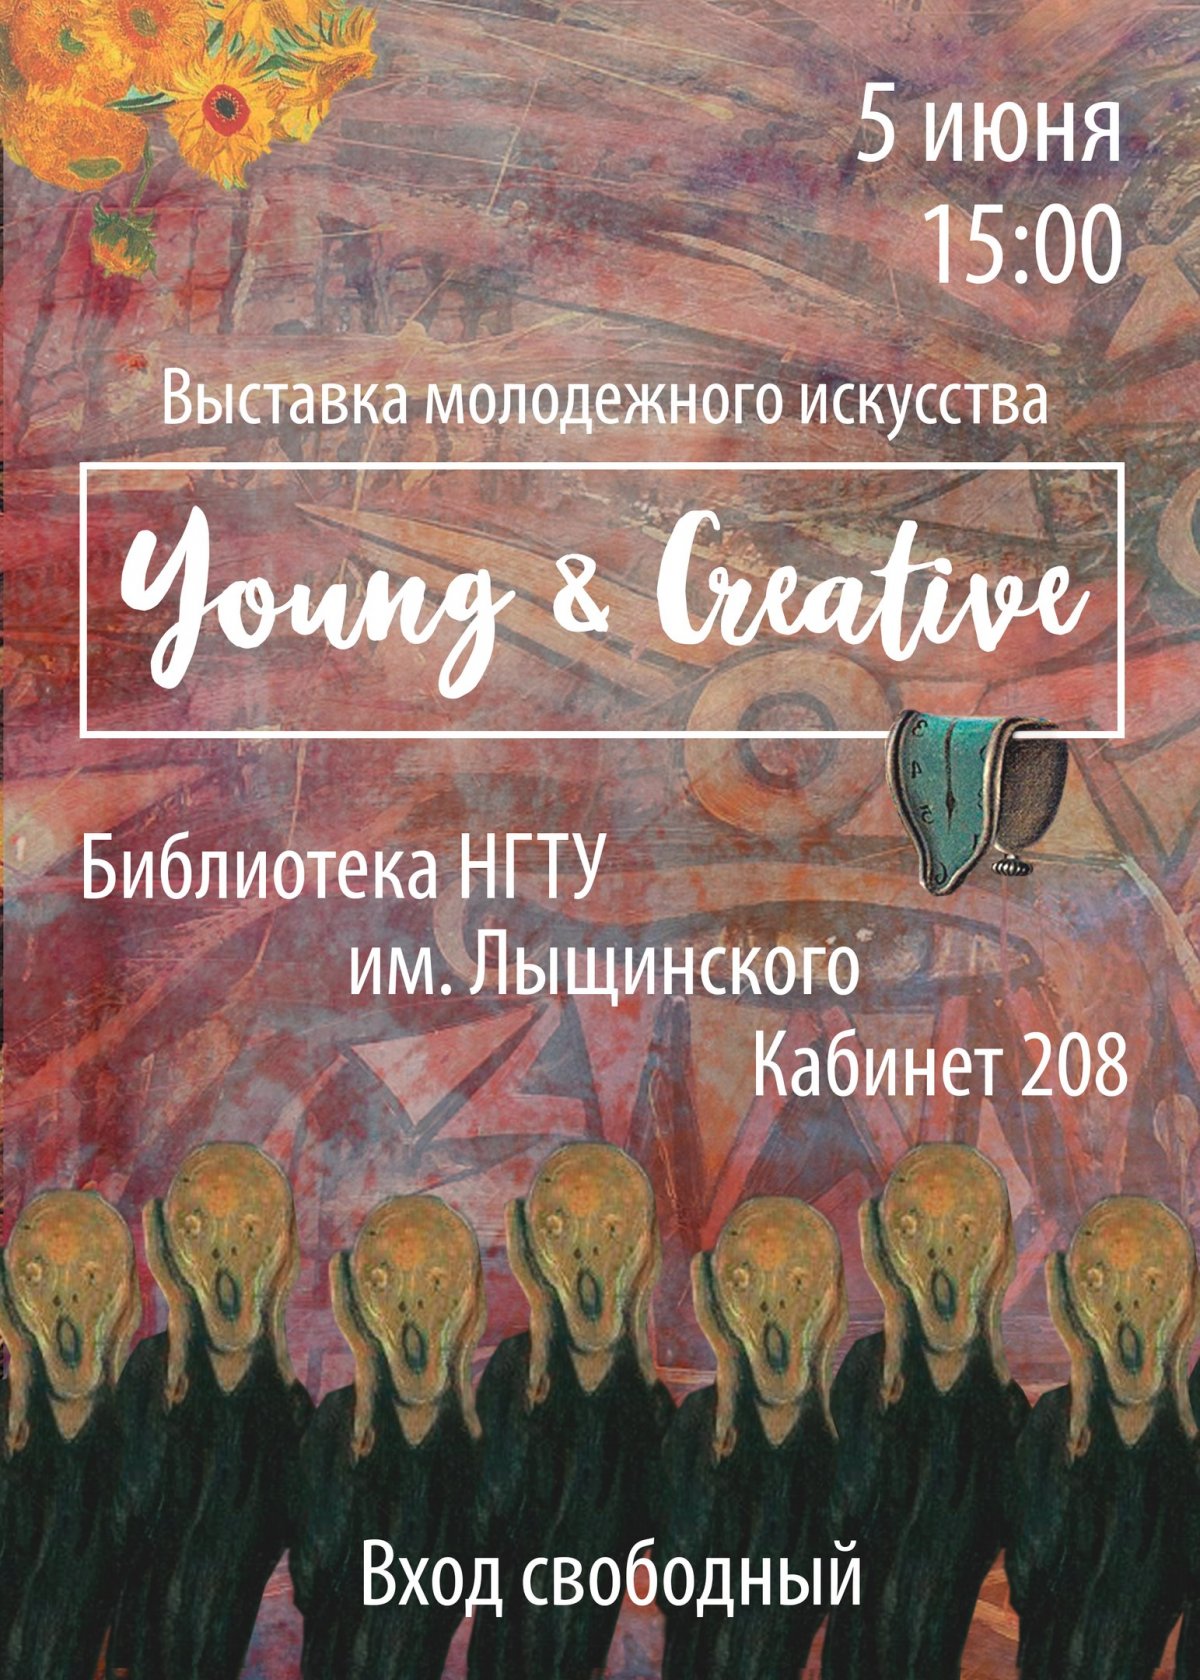 Молодые художники нашего ВУЗа приглашают тебя на выставку современного искусства «Young & Creative»🎨